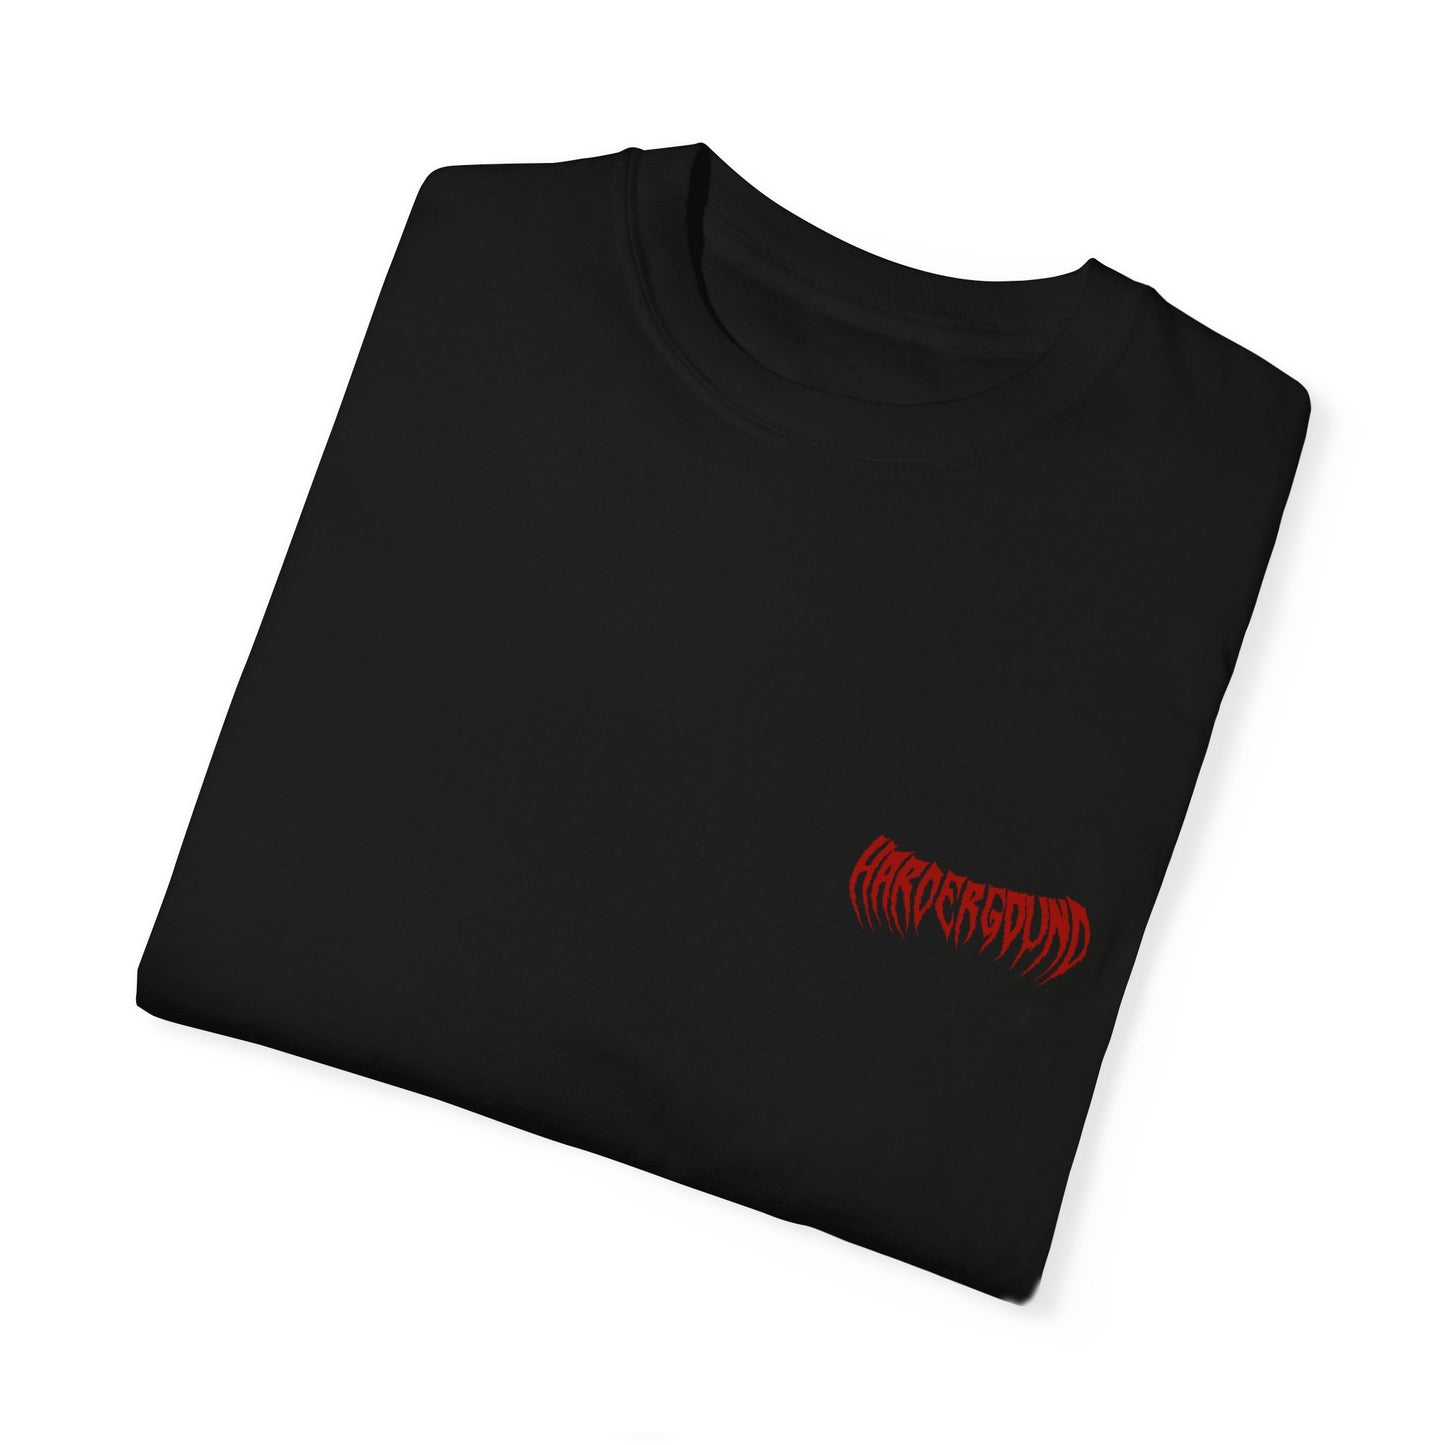 MONSTER - Unisex Garment-Dyed T-shirt - front & back logo